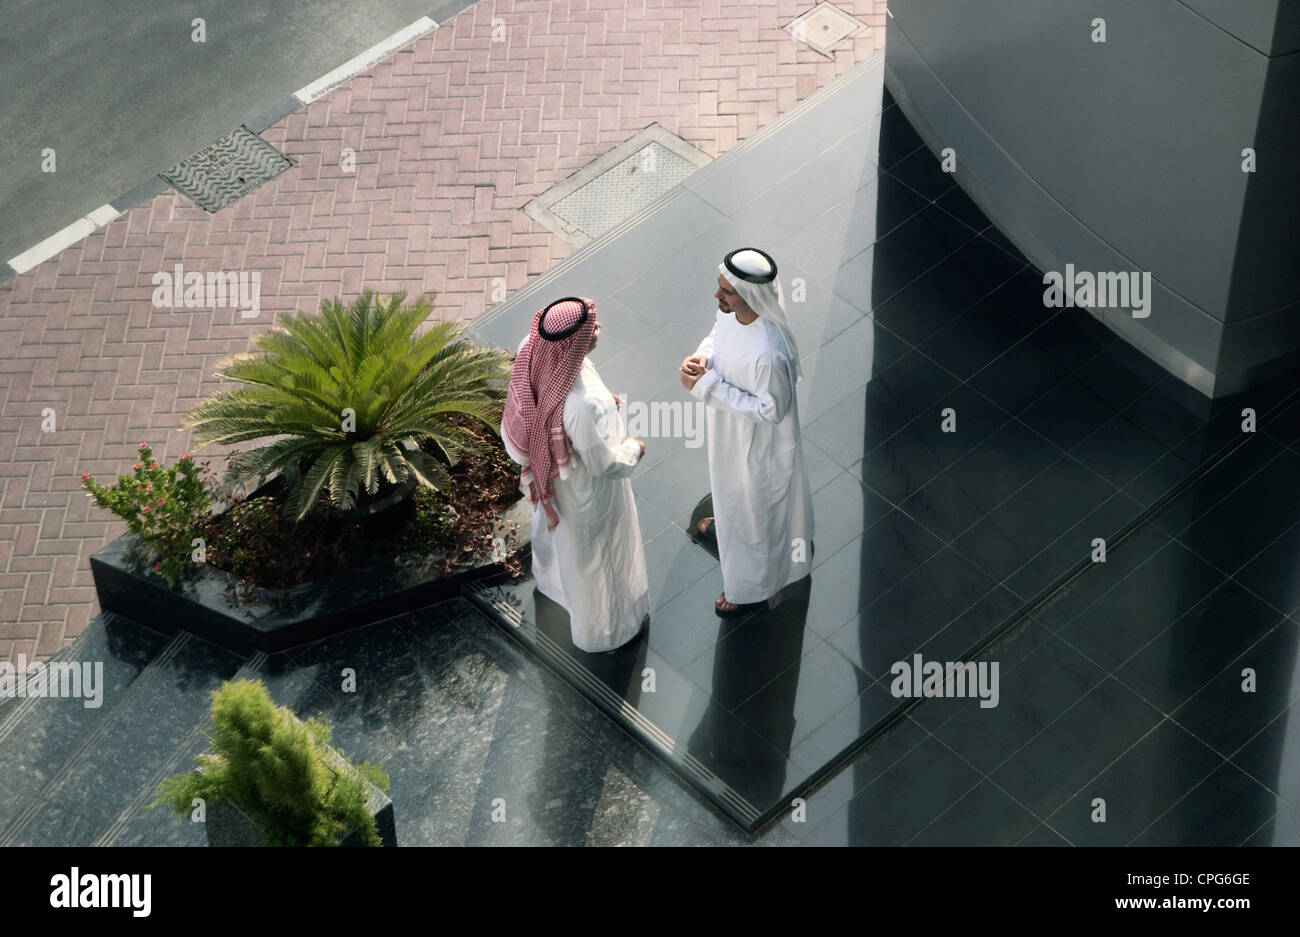 Zwei arabische Menschen auf ihr Gespräch außerhalb des Gebäudes beschäftigt. Stockfoto